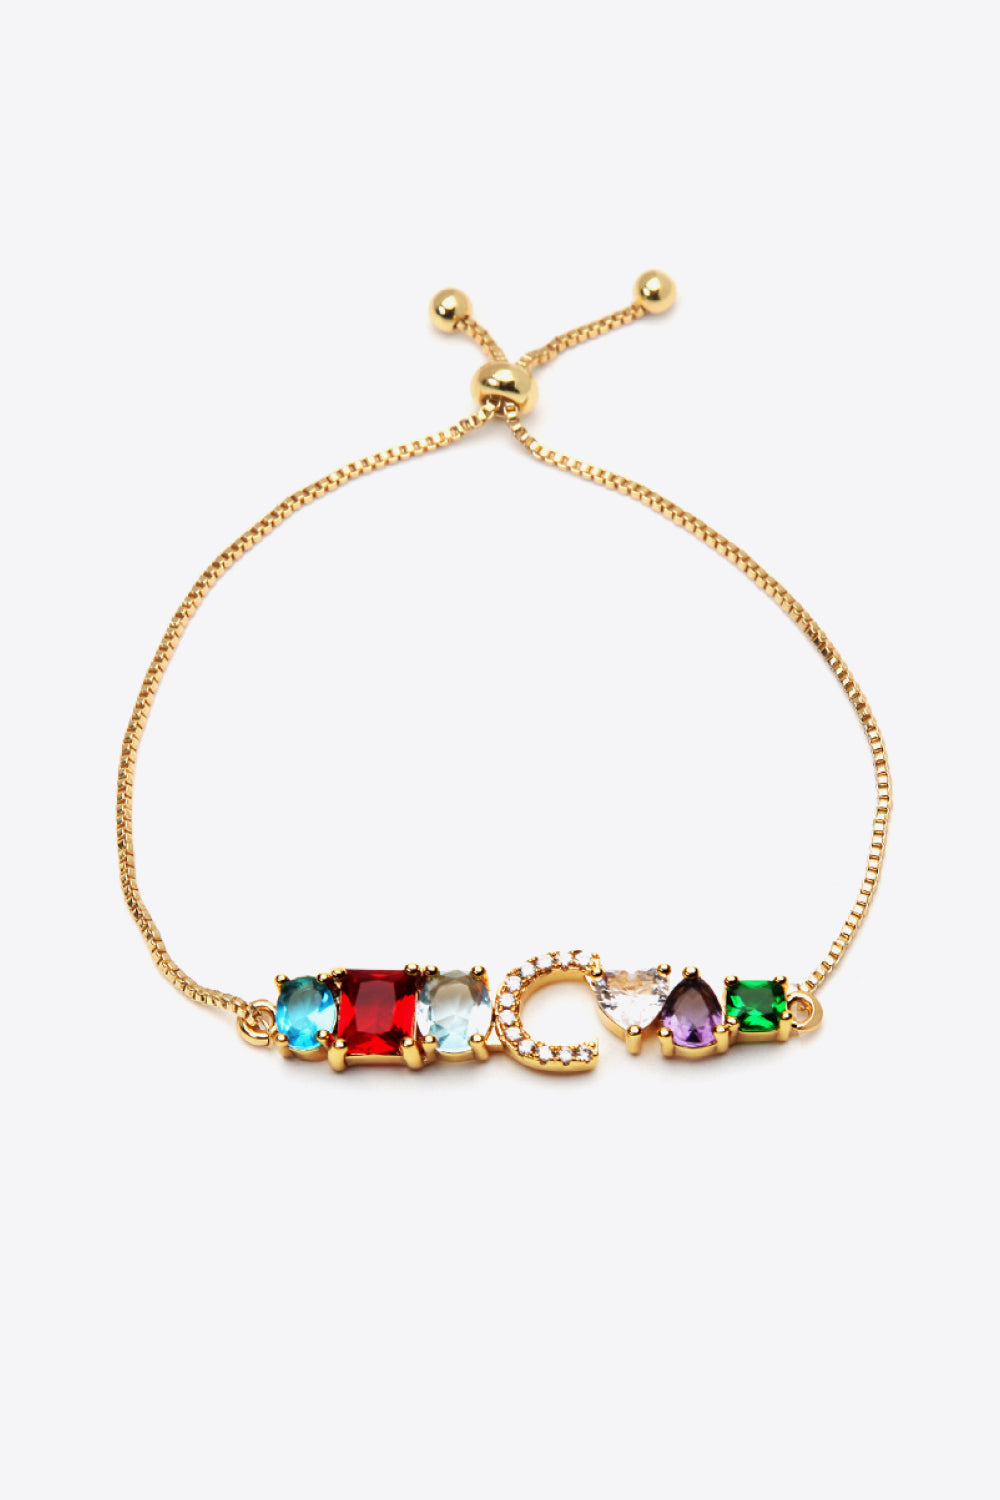 A to J Zircon Bracelet - C / One Size - Women’s Jewelry - Bracelets - 7 - 2024